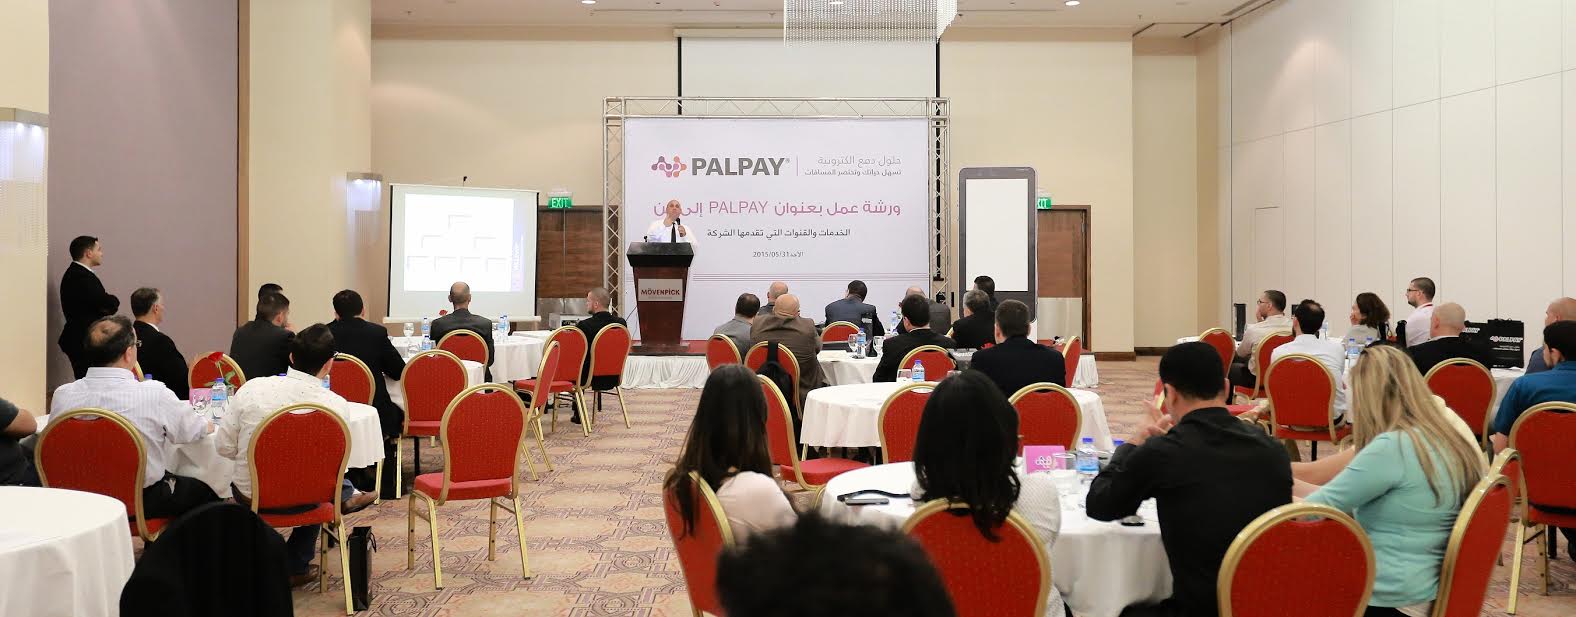 PALPAY  تعقد ورشة عمل لشرح الخدمات الإلكترونية والقنوات التي تقدمها للمؤسسات المتعاقدة معها والبنوك التي ستطلق خدماتها من خلال أنظمتها